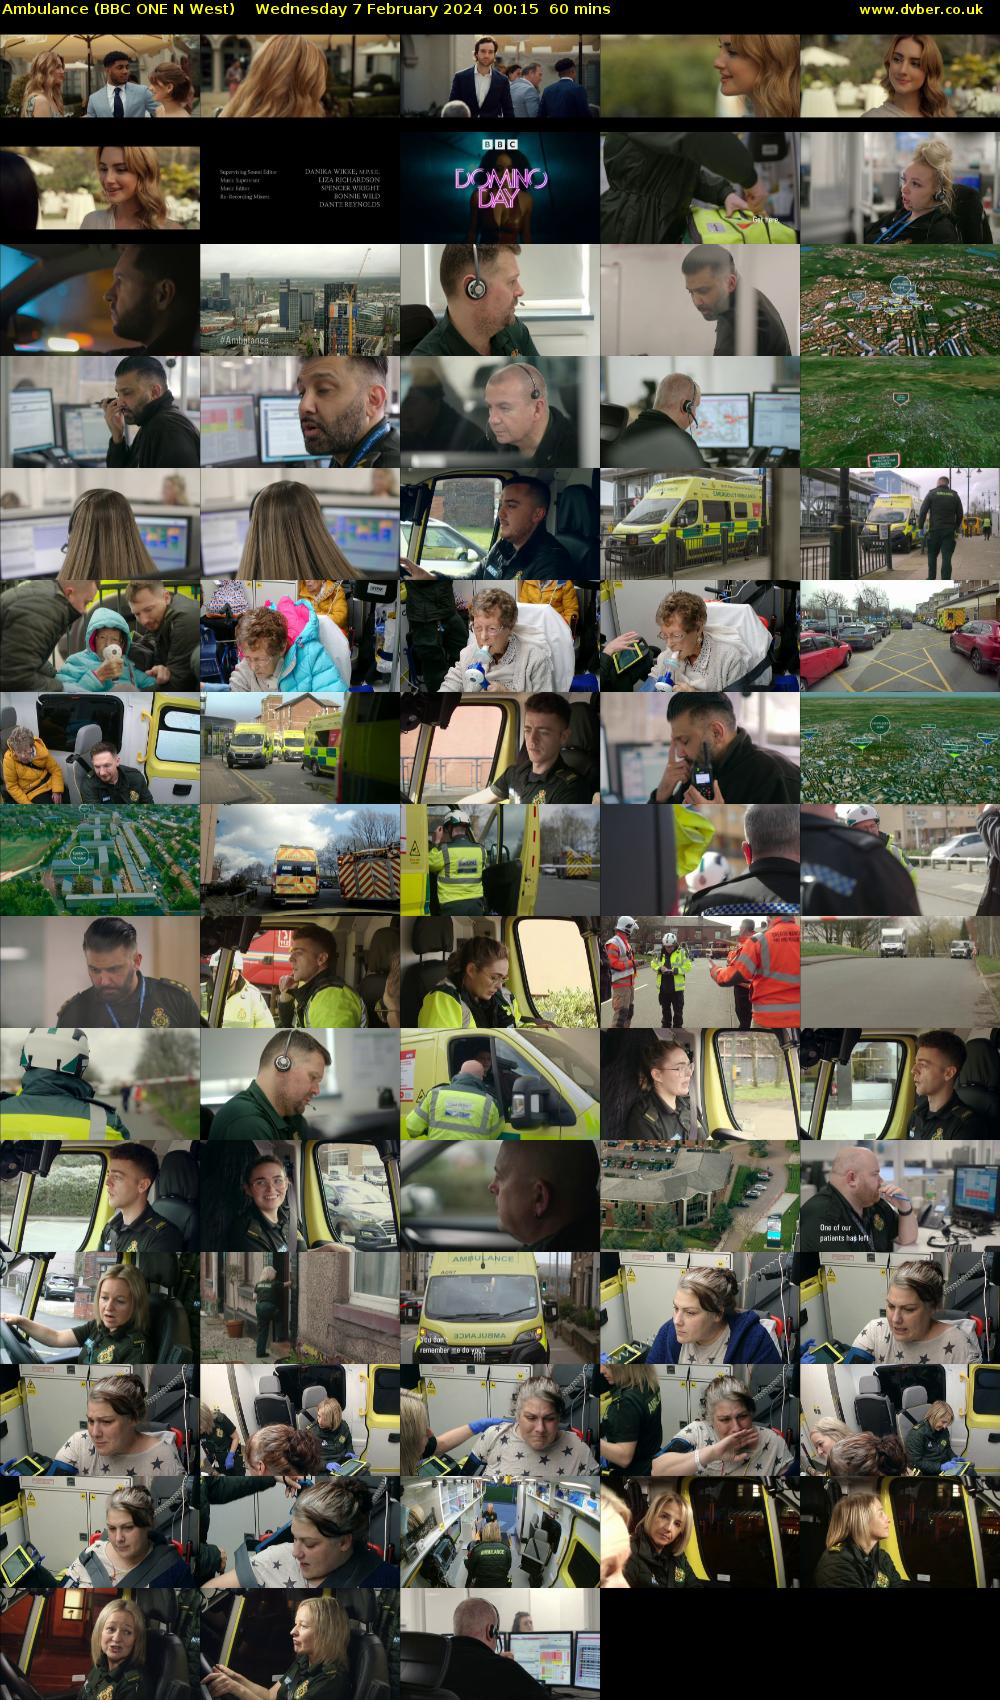 Ambulance (BBC ONE N West) Wednesday 7 February 2024 00:15 - 01:15